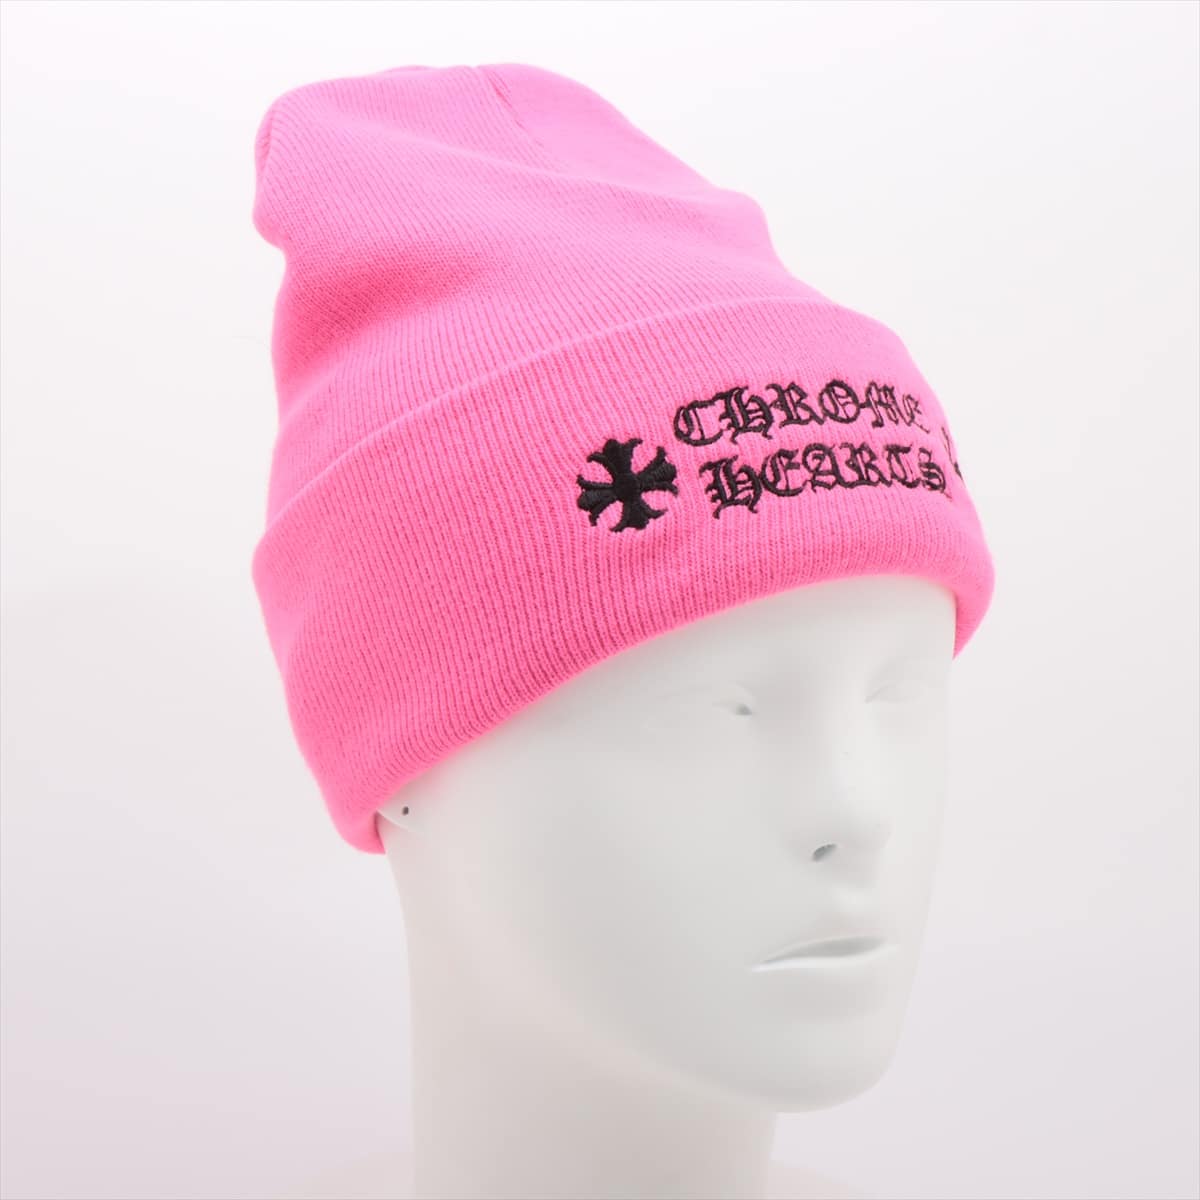 【激レア】クロムハーツ ニット帽 ビーニー 正規品 新品 ピンク オンライン限定送られてきた時の専用ボックス